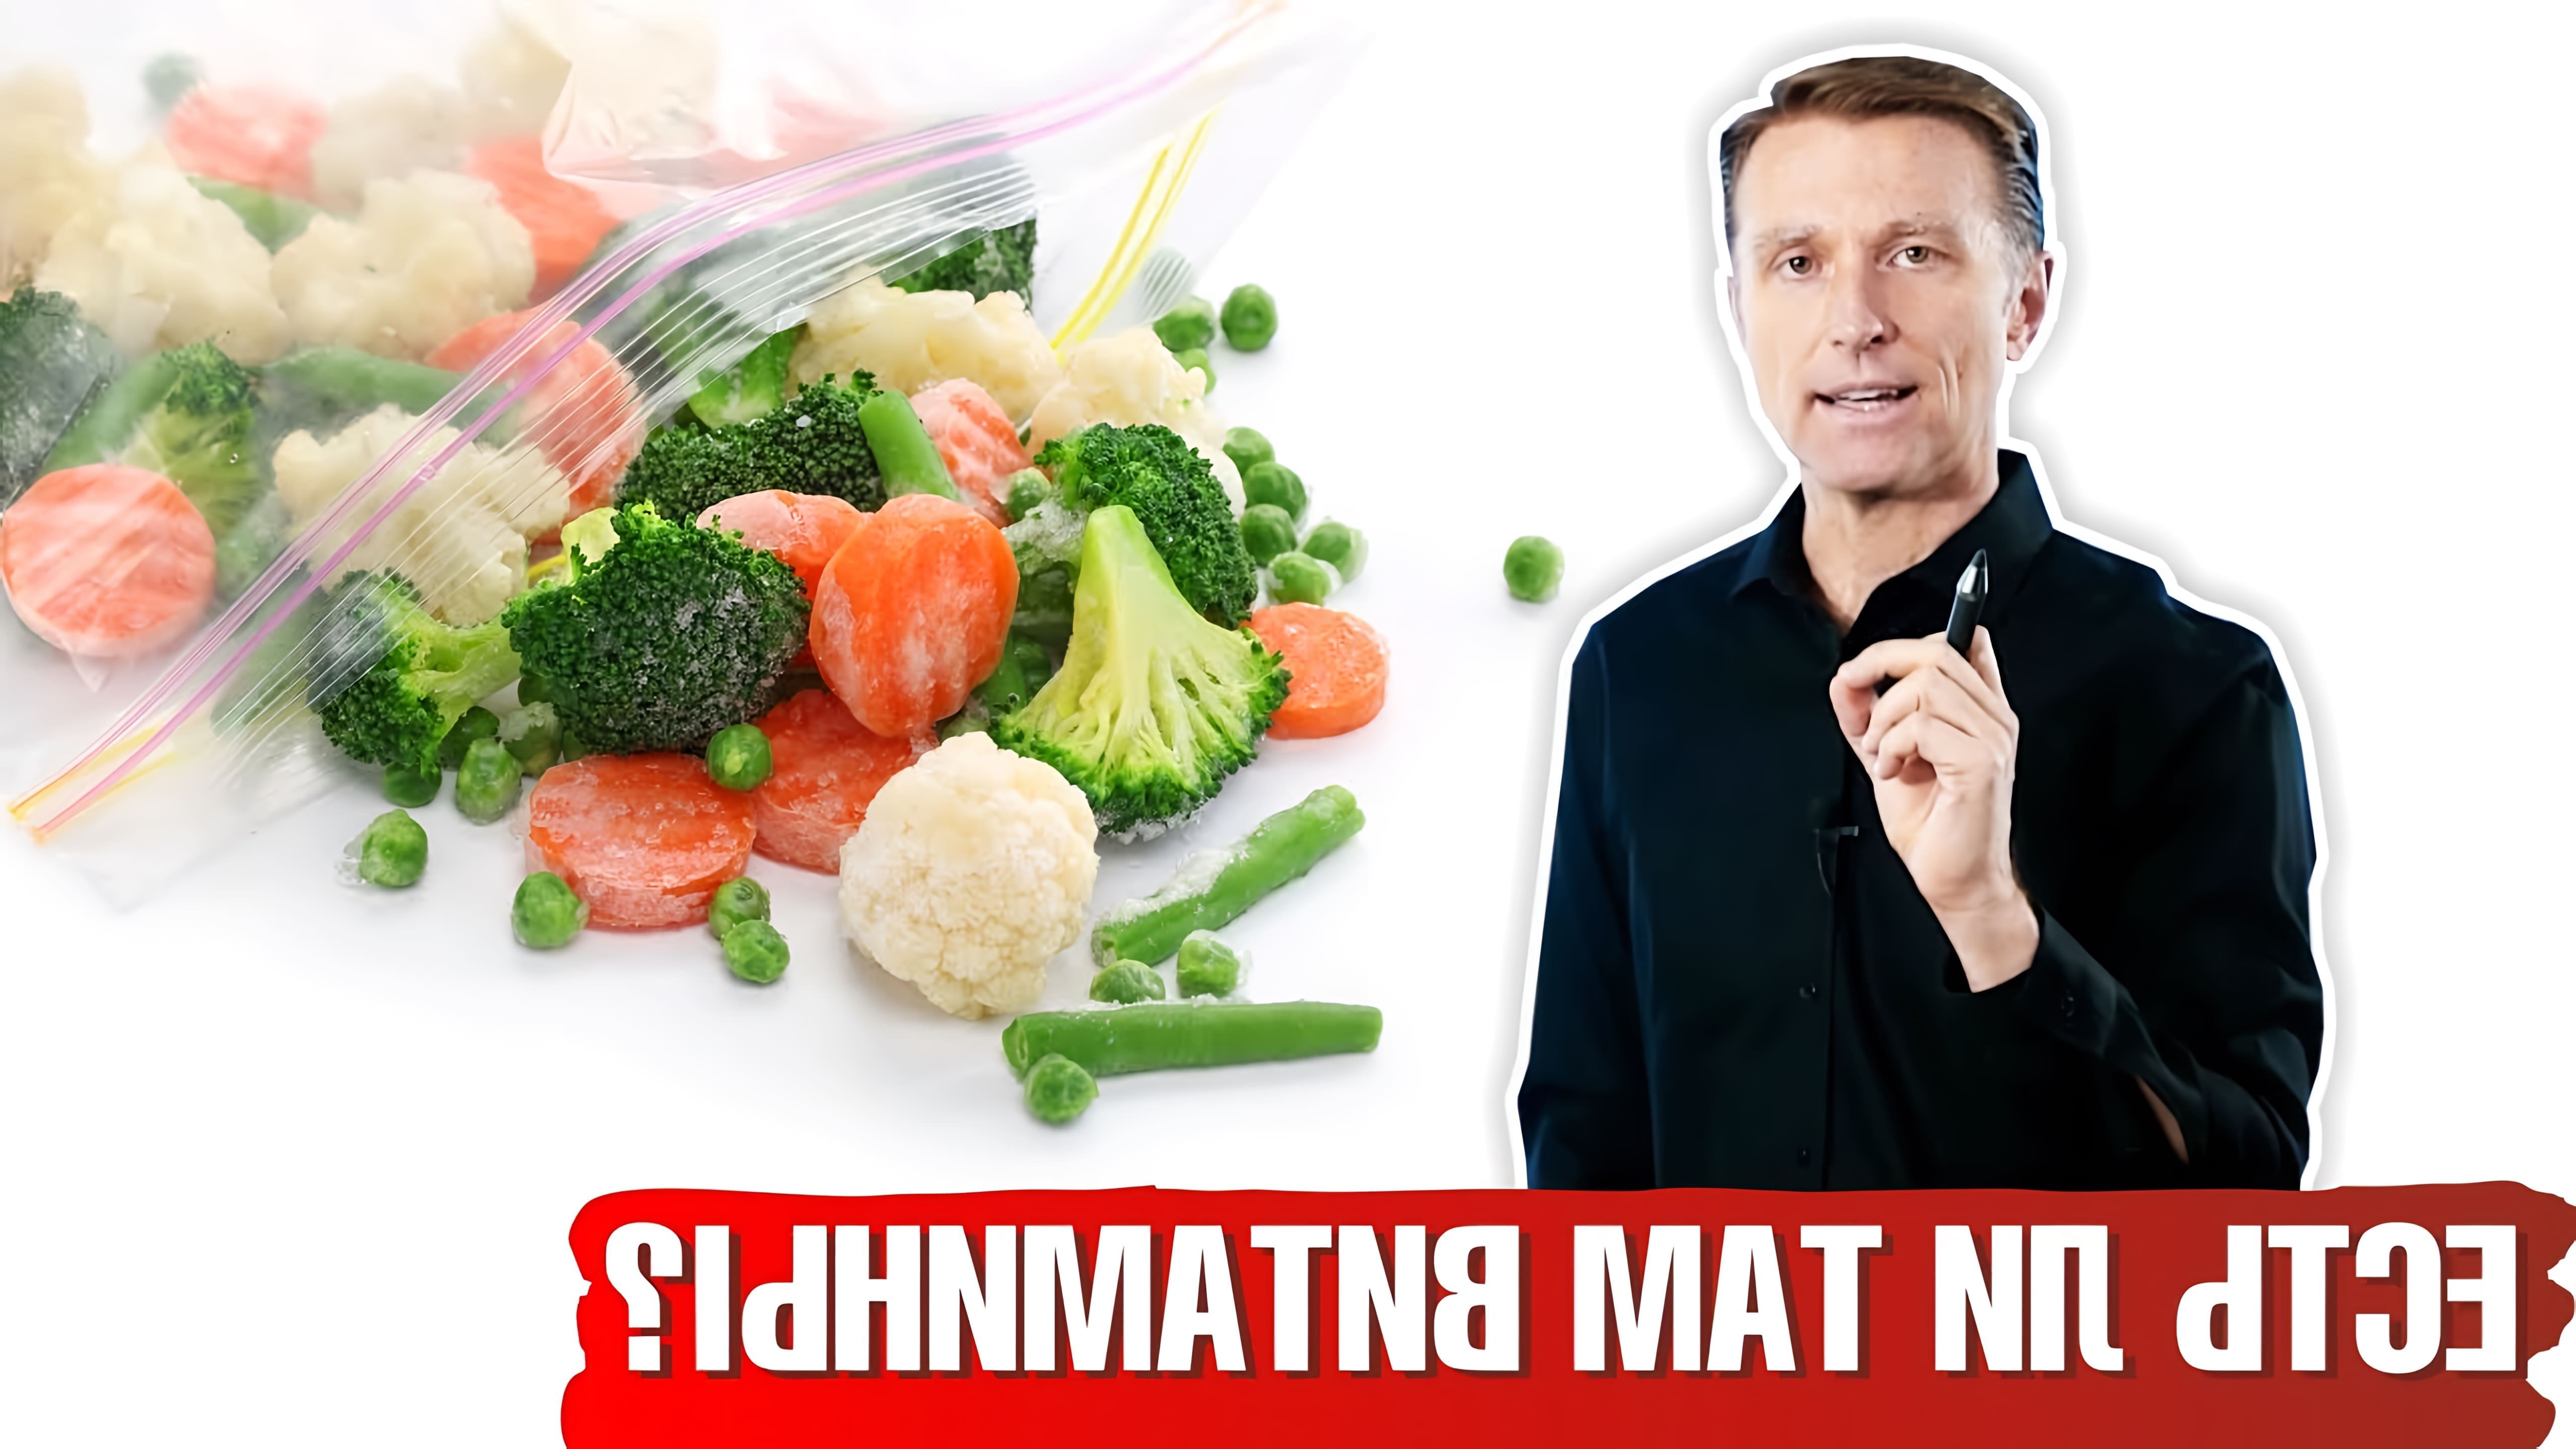 В этом видео-ролике рассказывается о том, как правильно заморозить овощи, чтобы сохранить в них максимальное количество витаминов